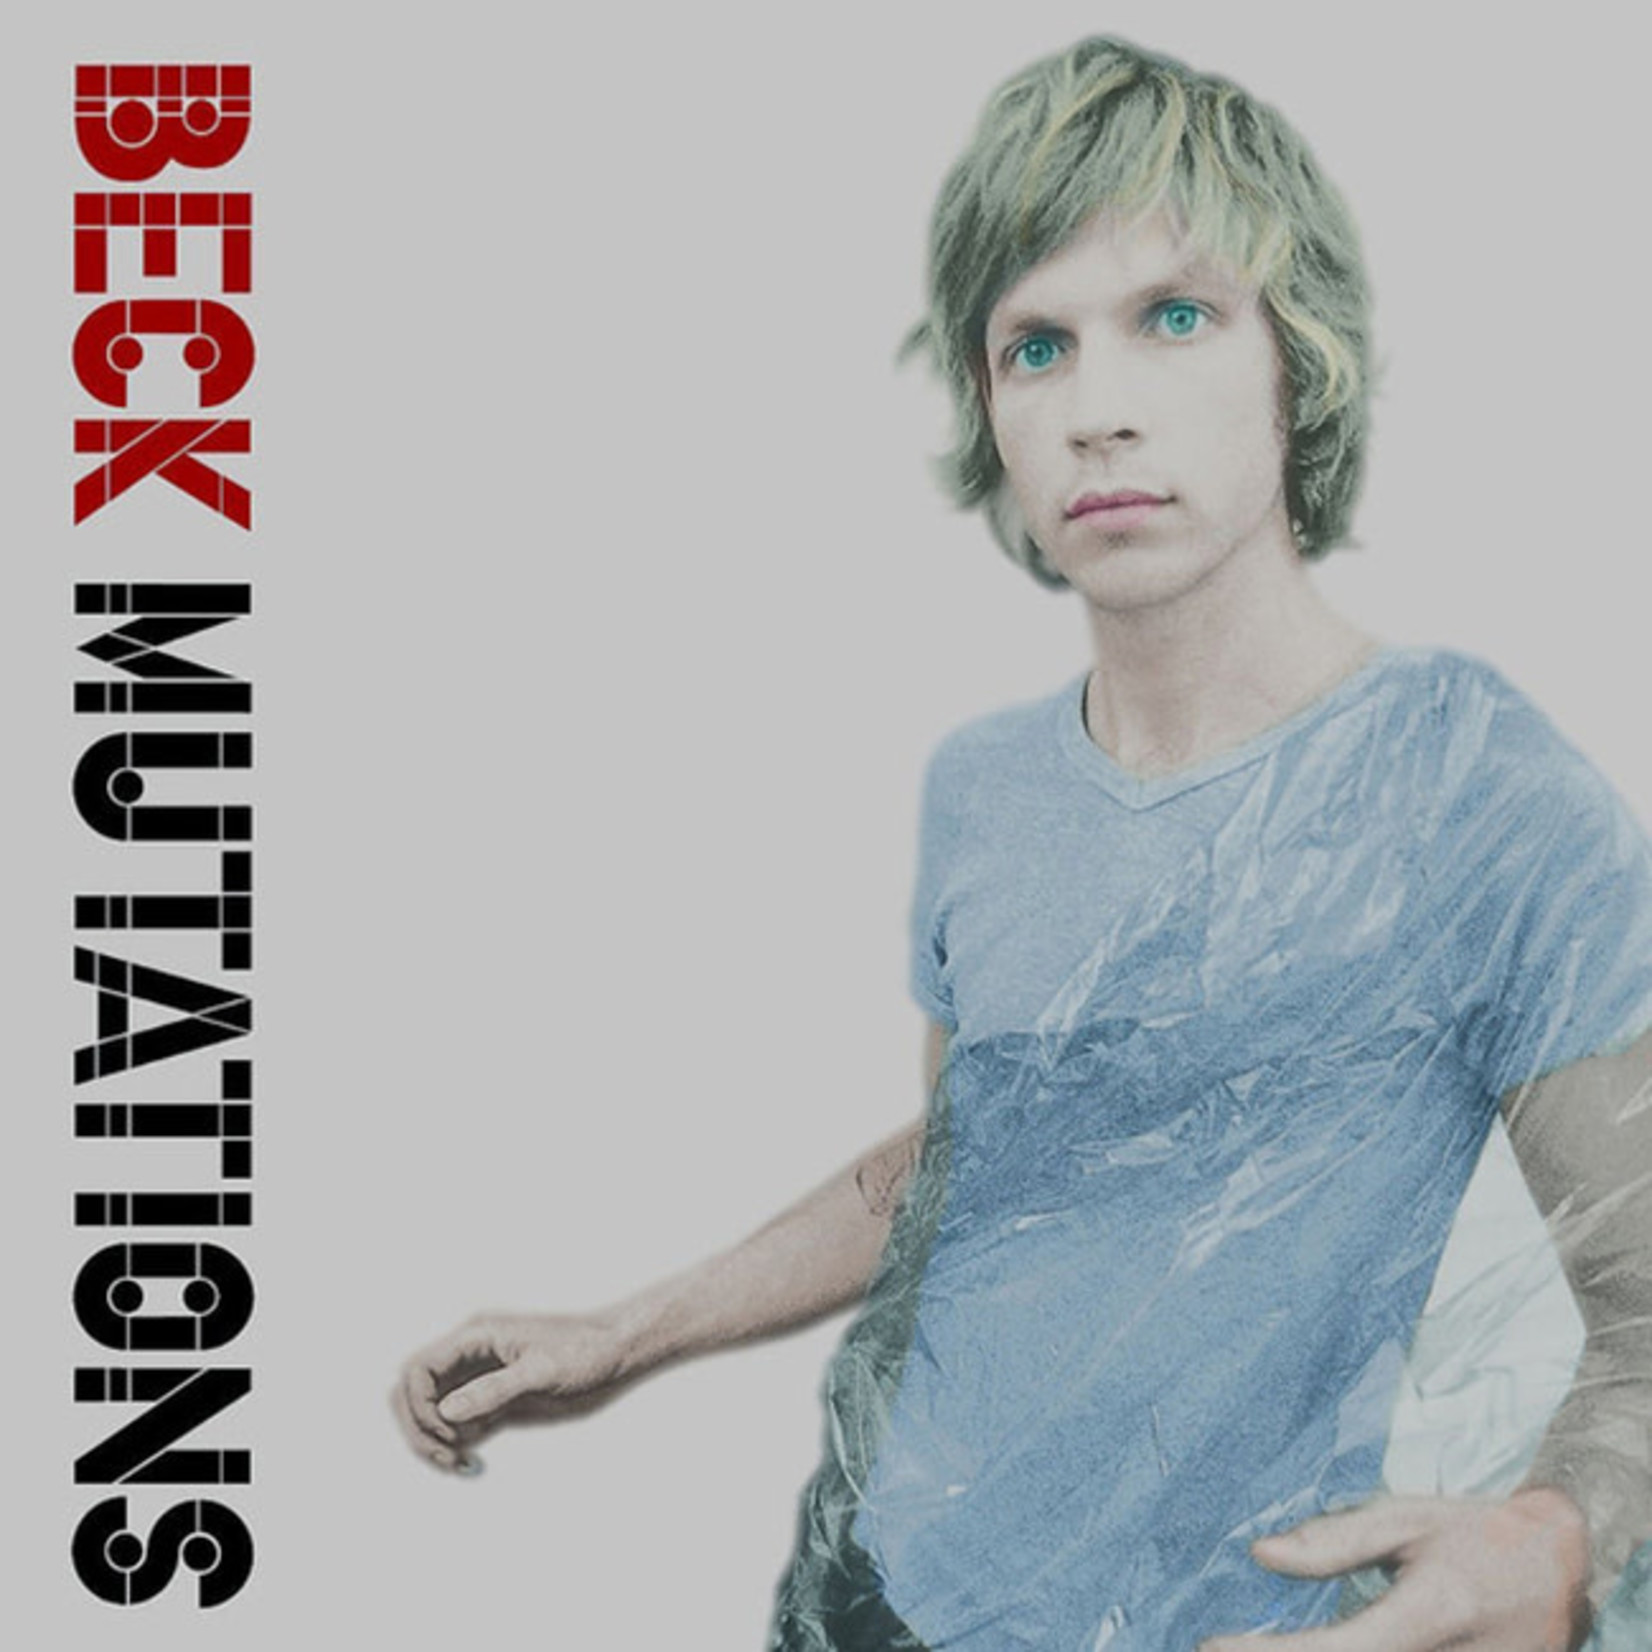 [New] Beck - Mutations